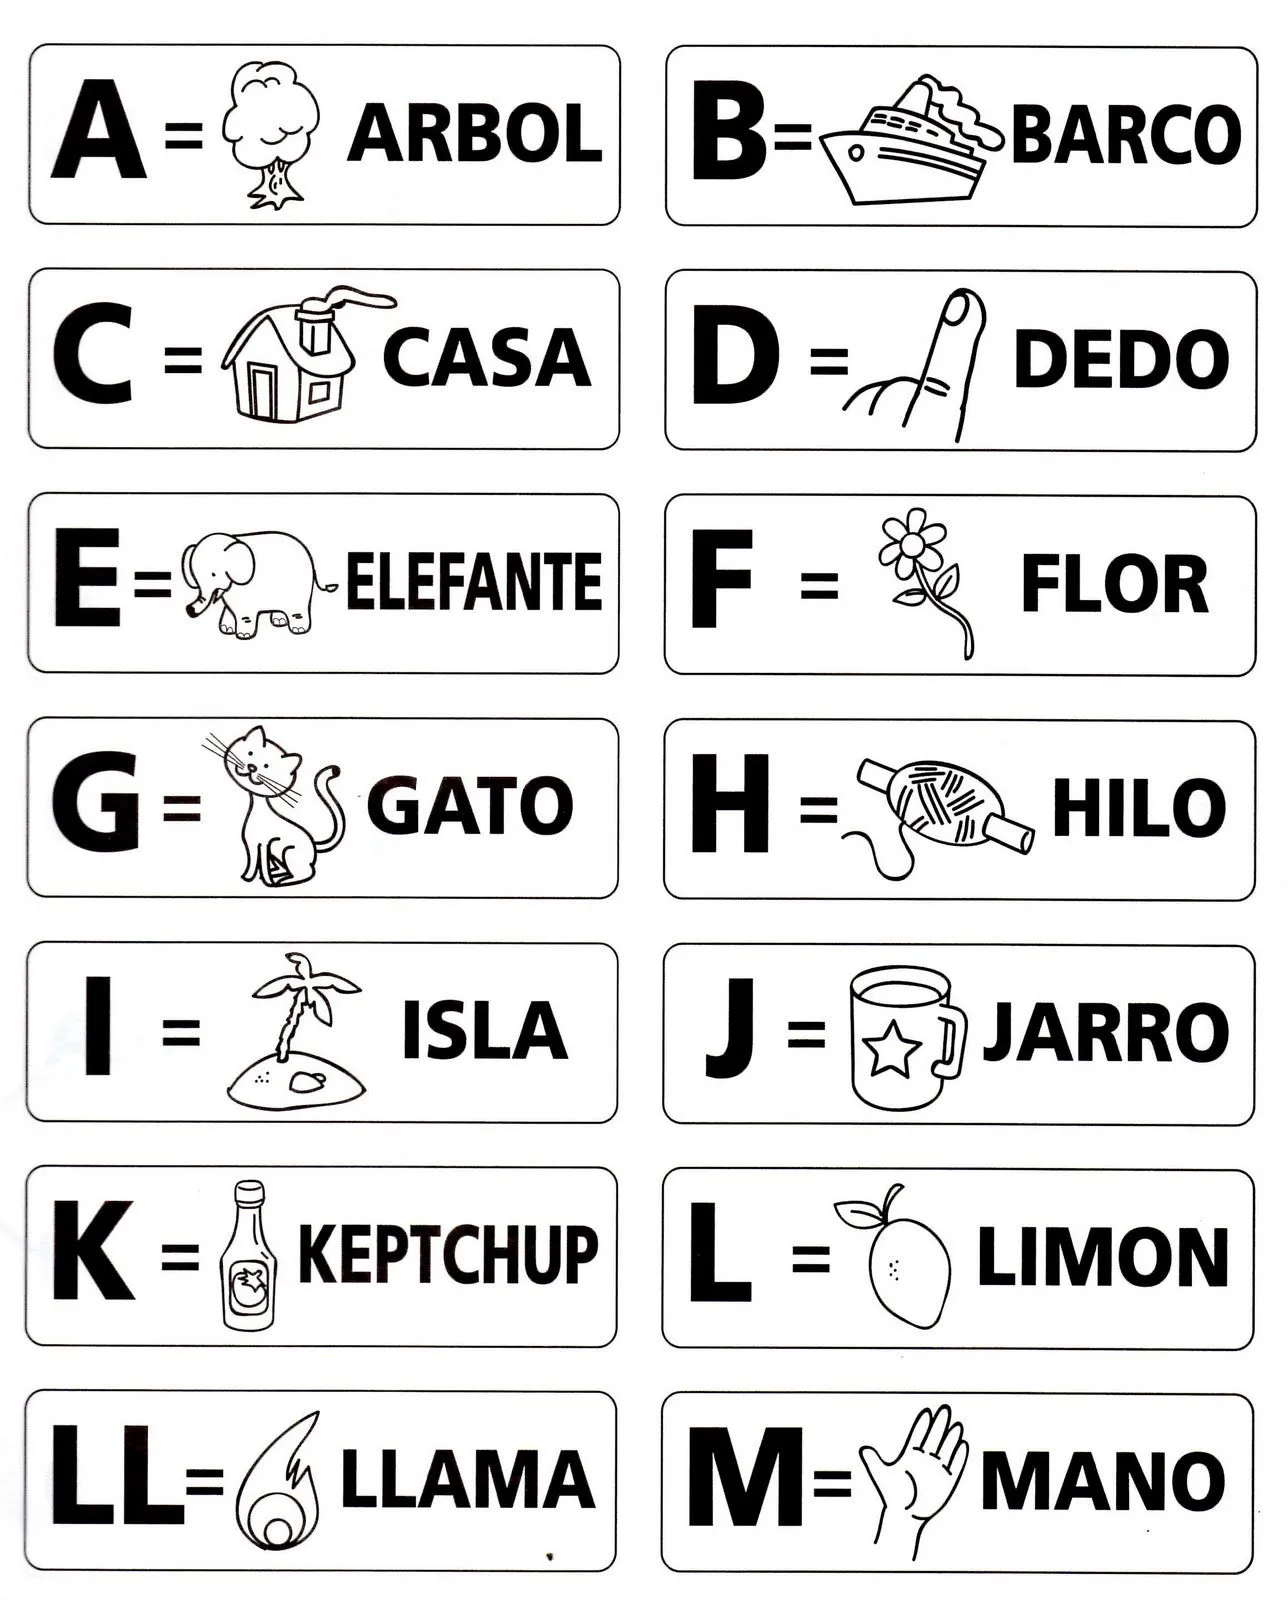 Fichas Infantiles: Ficha de las letras del abecedario con dibujos